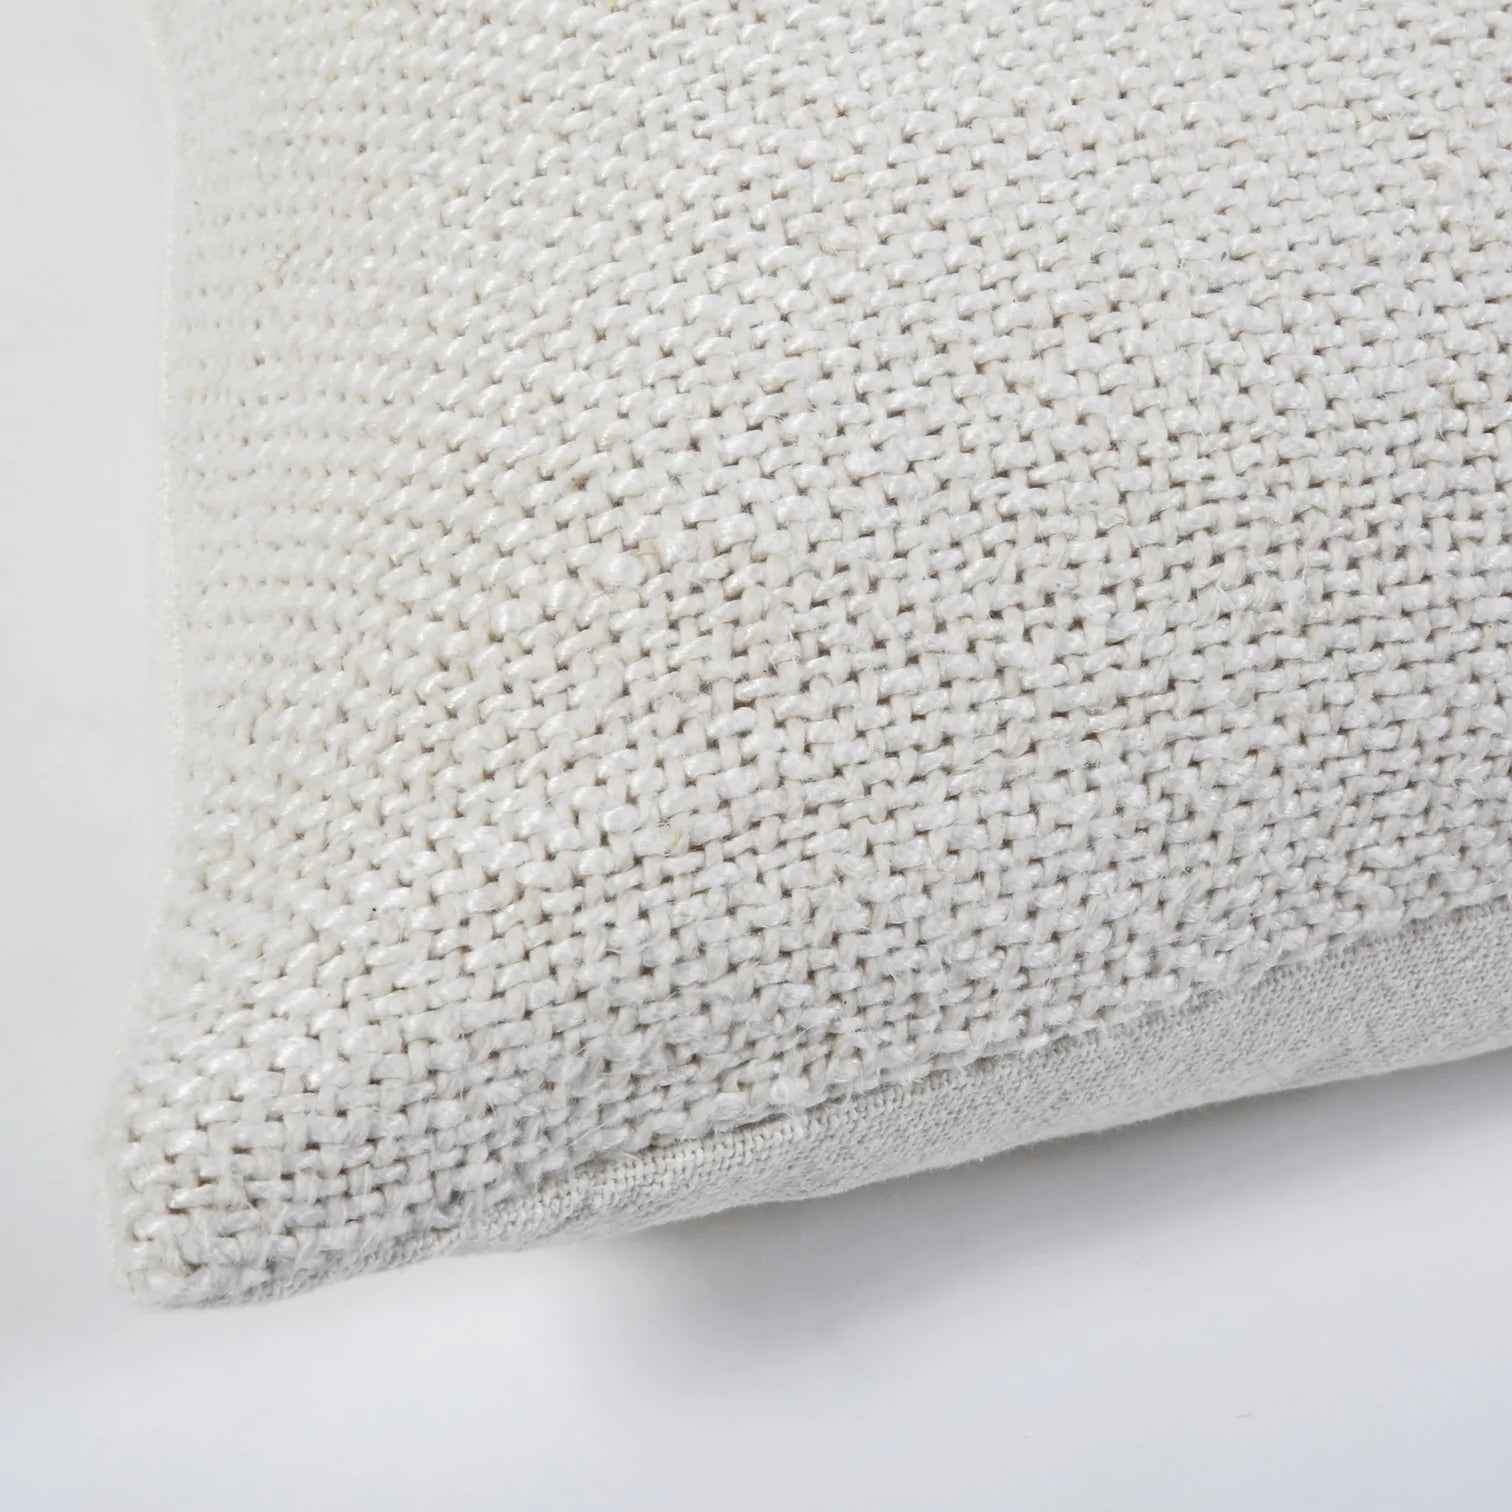 Hendrick Rectangular Pillow, Cream